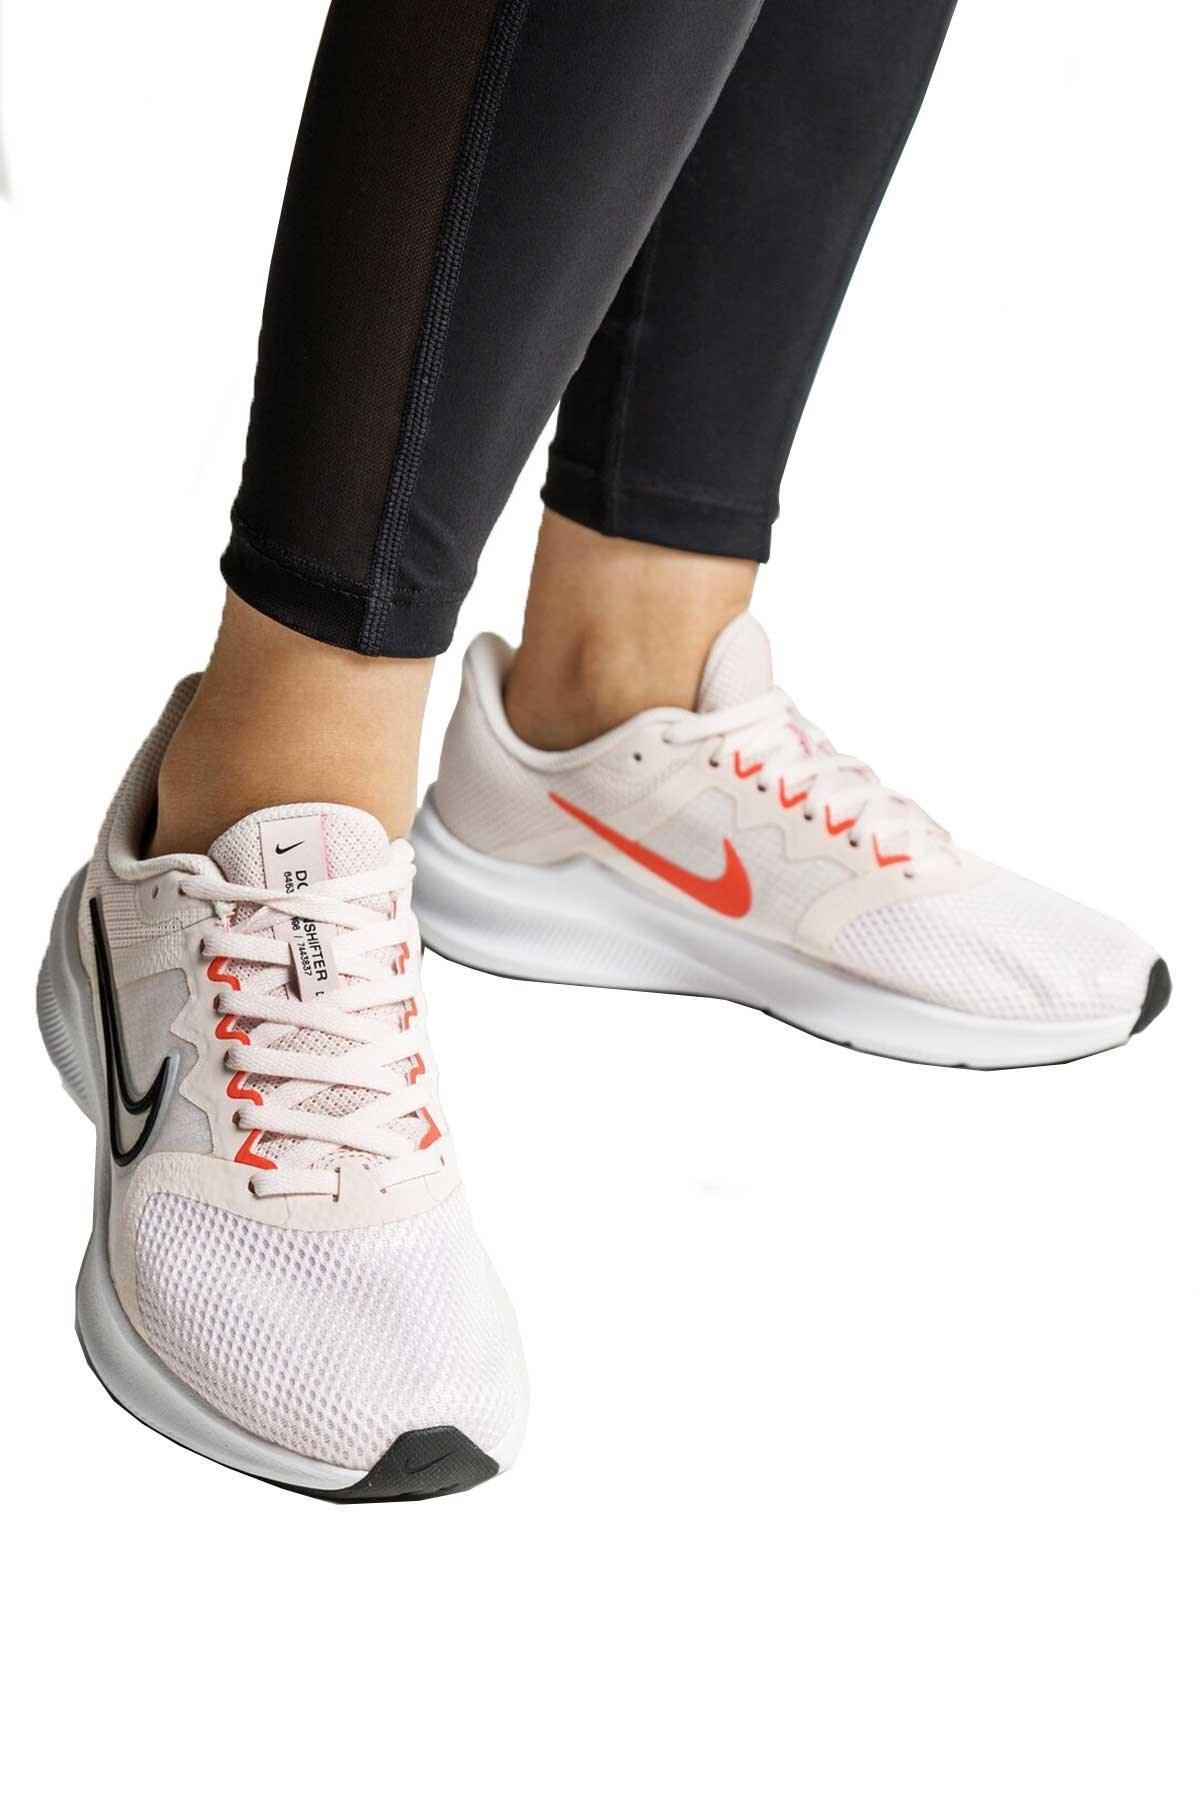 Nike Wmns Downshıfter 11 Kadın Koşu Ayakkabısı Cw3413-601